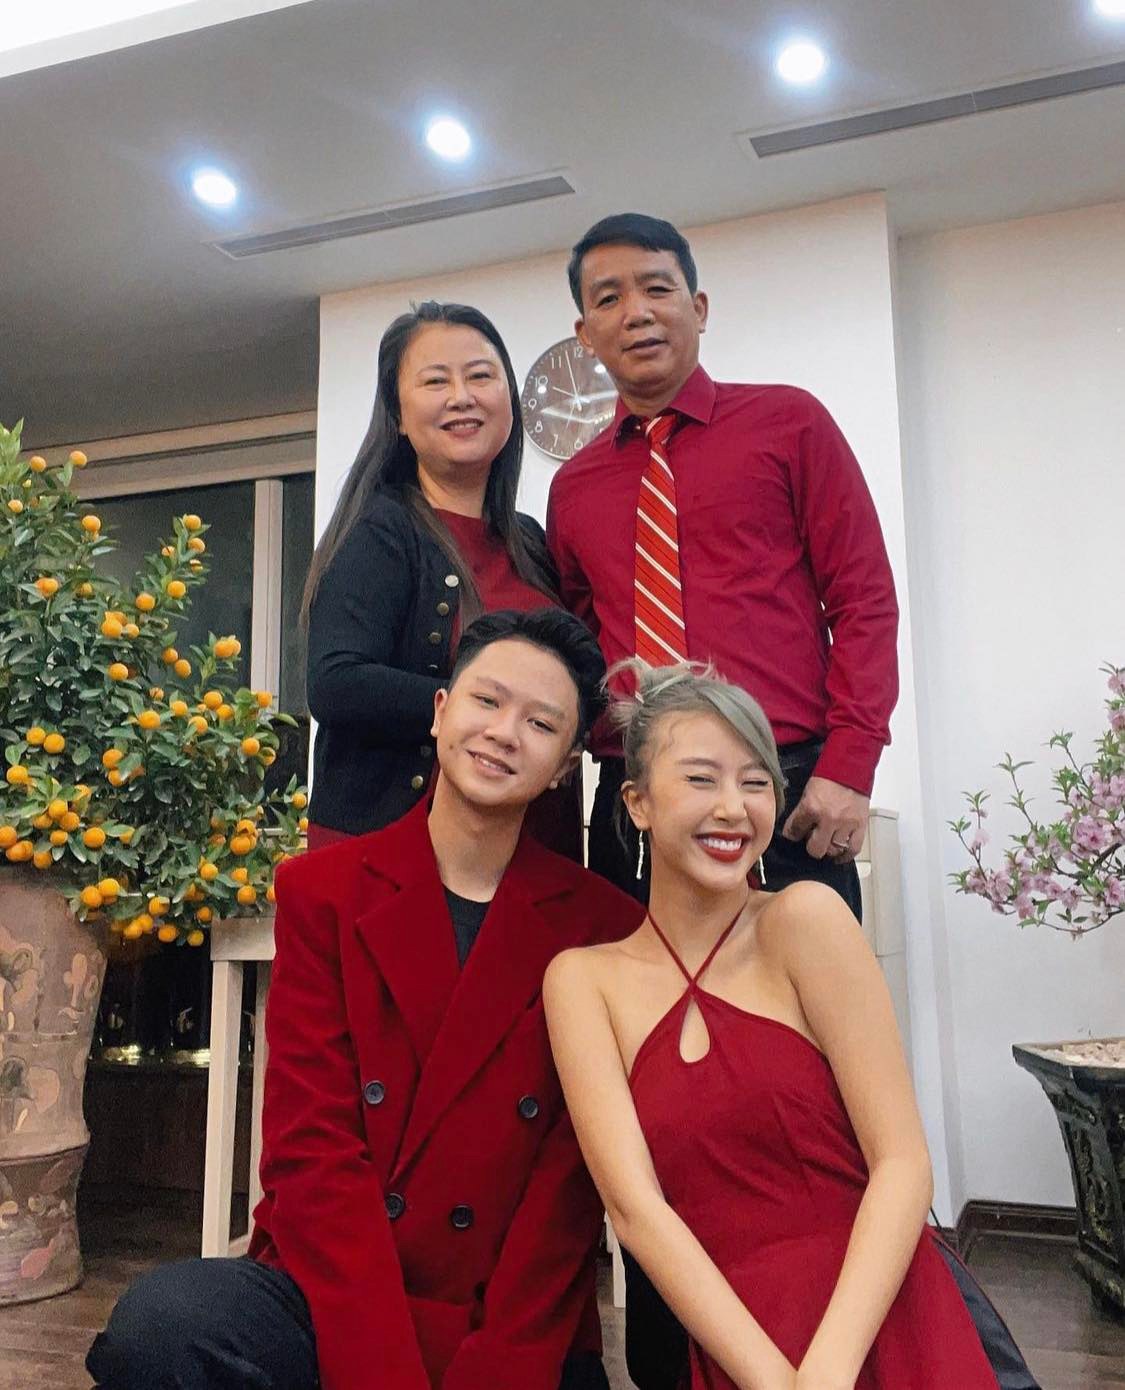 Người mẫu Quỳnh Anh Shyn cùng các thành viên trong gia đình diện đồ với sắc đỏ đồng điệu chúc tụng nhau trong ngày đầu năm, chuẩn bị du xuân.